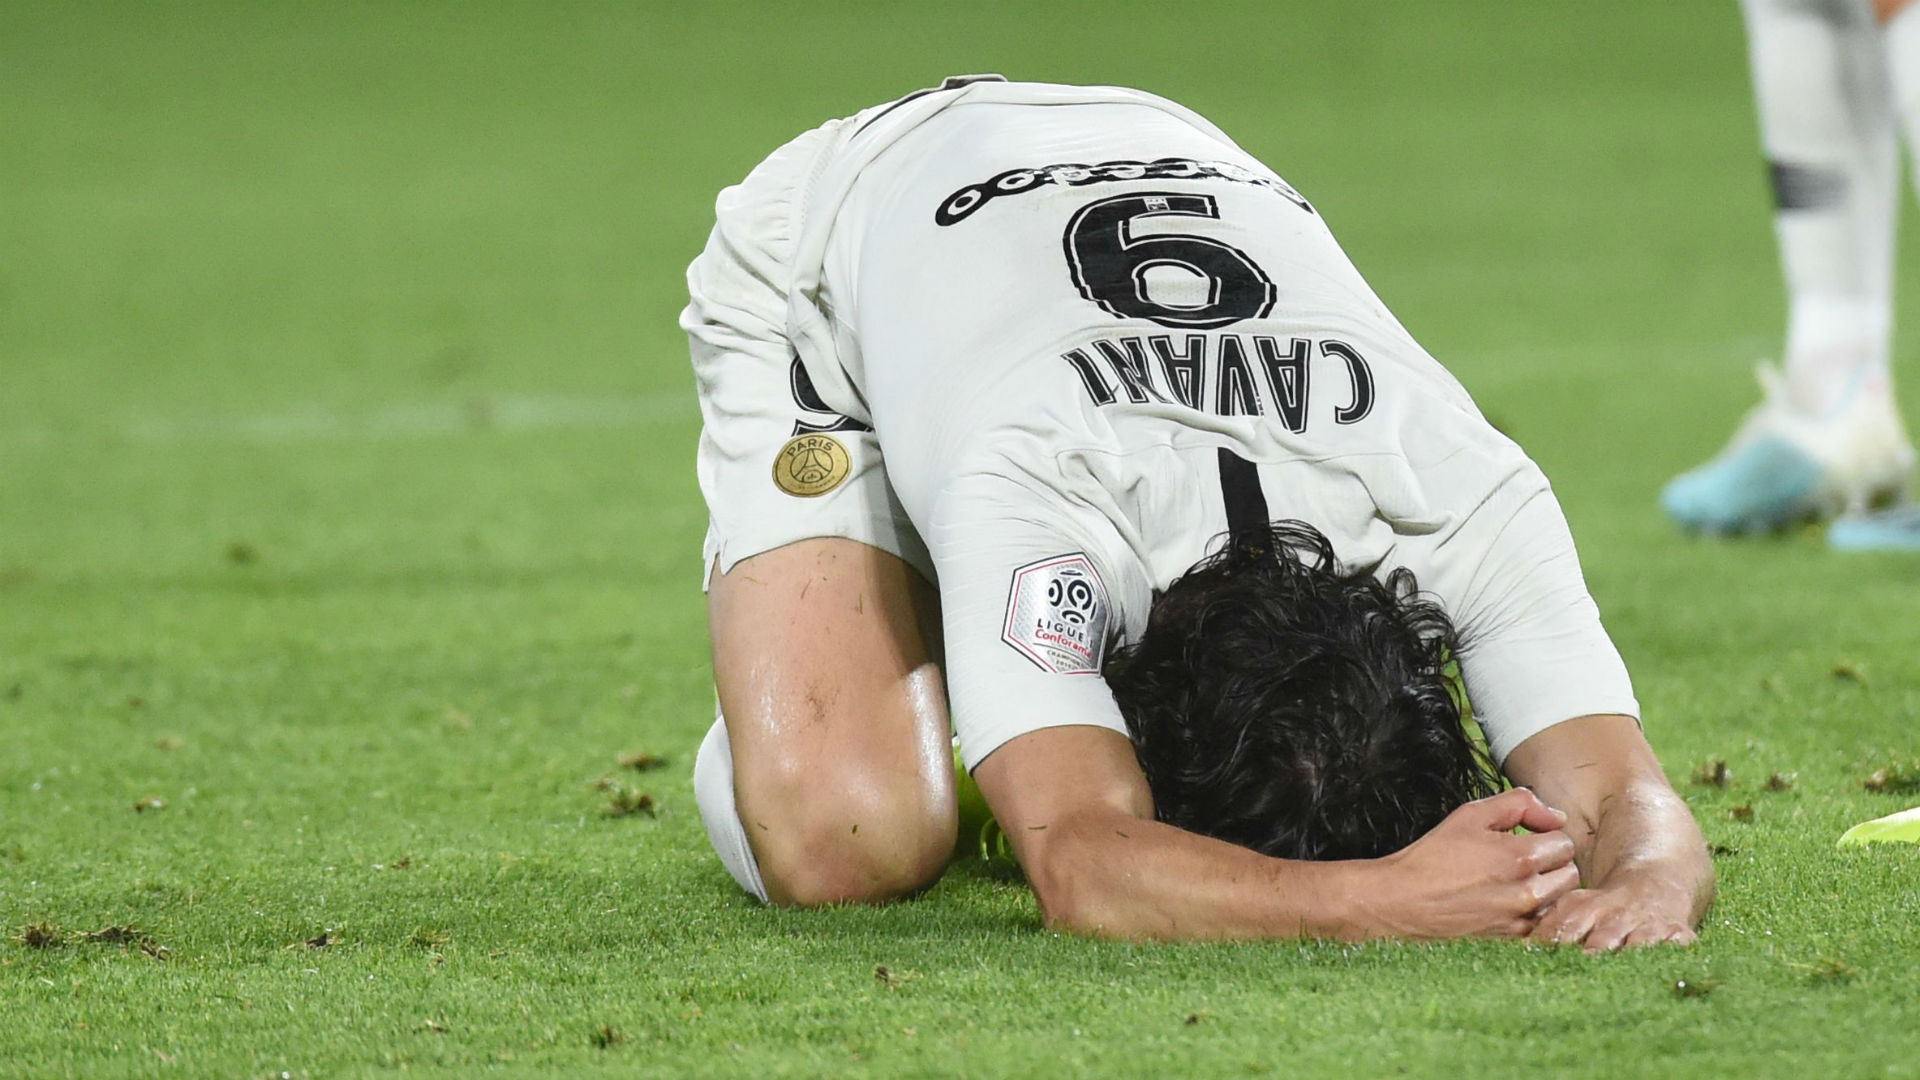 Pas suffisamment remis, Cavani devrait rater le choc PSG - Real Madrid